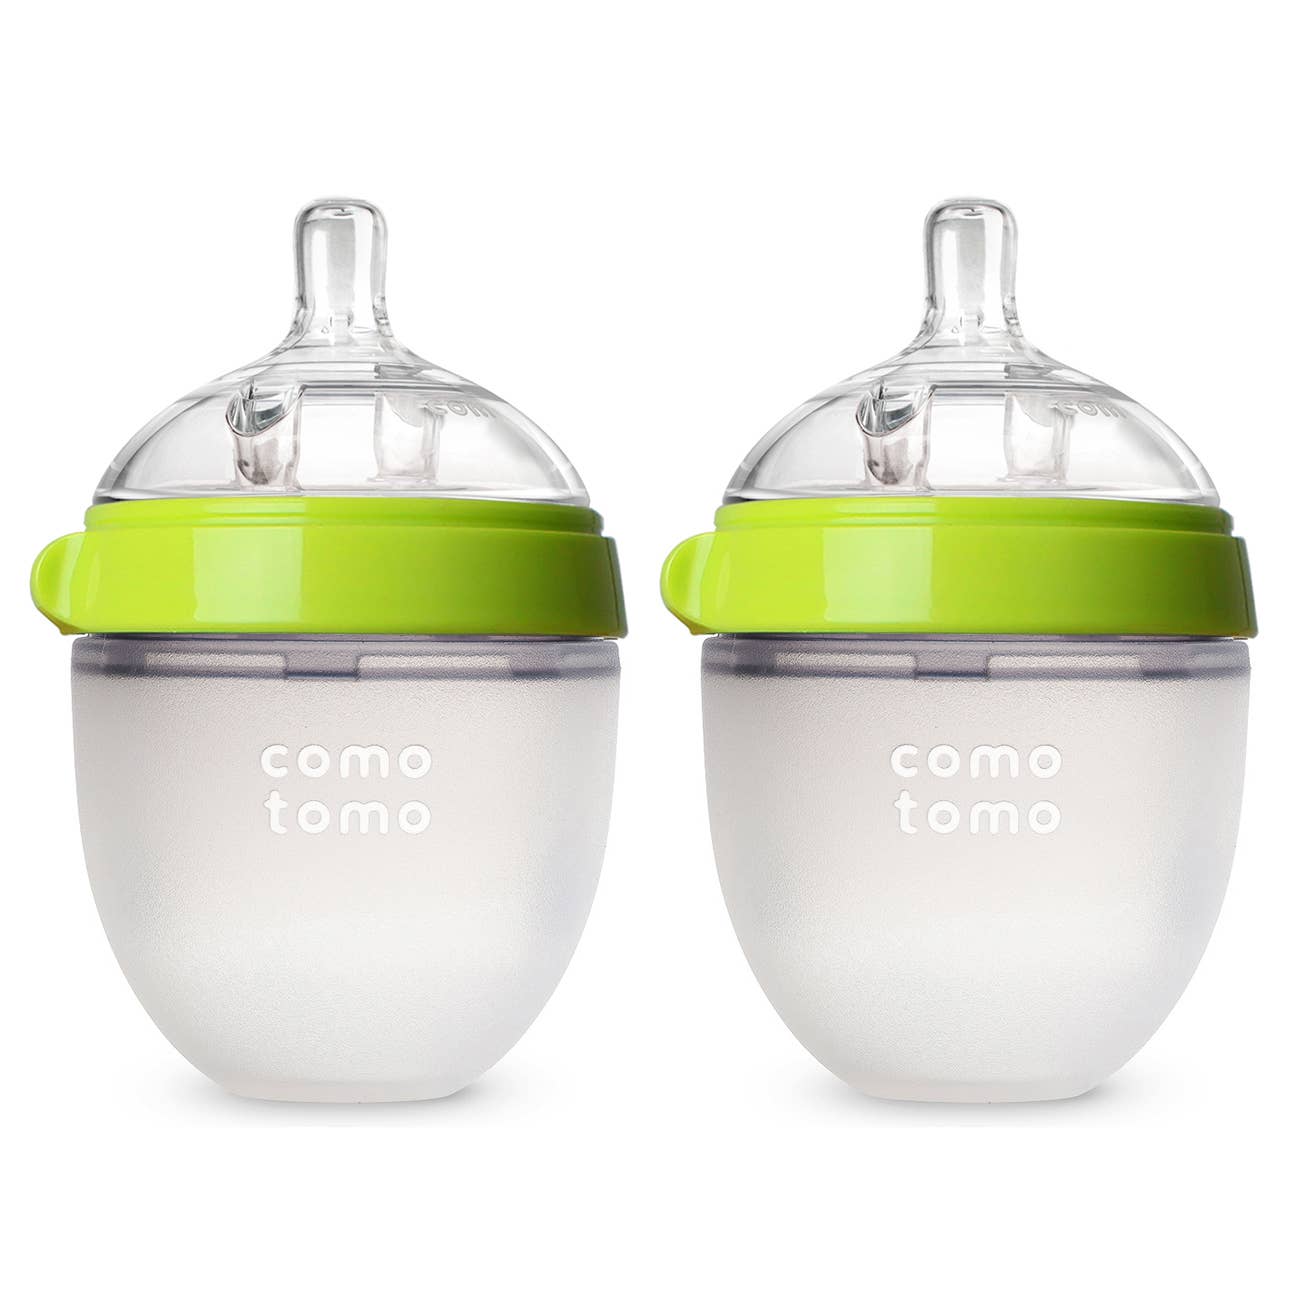 Comotomo - Comotomo Baby Bottle, Double Pack - 5 oz - Green